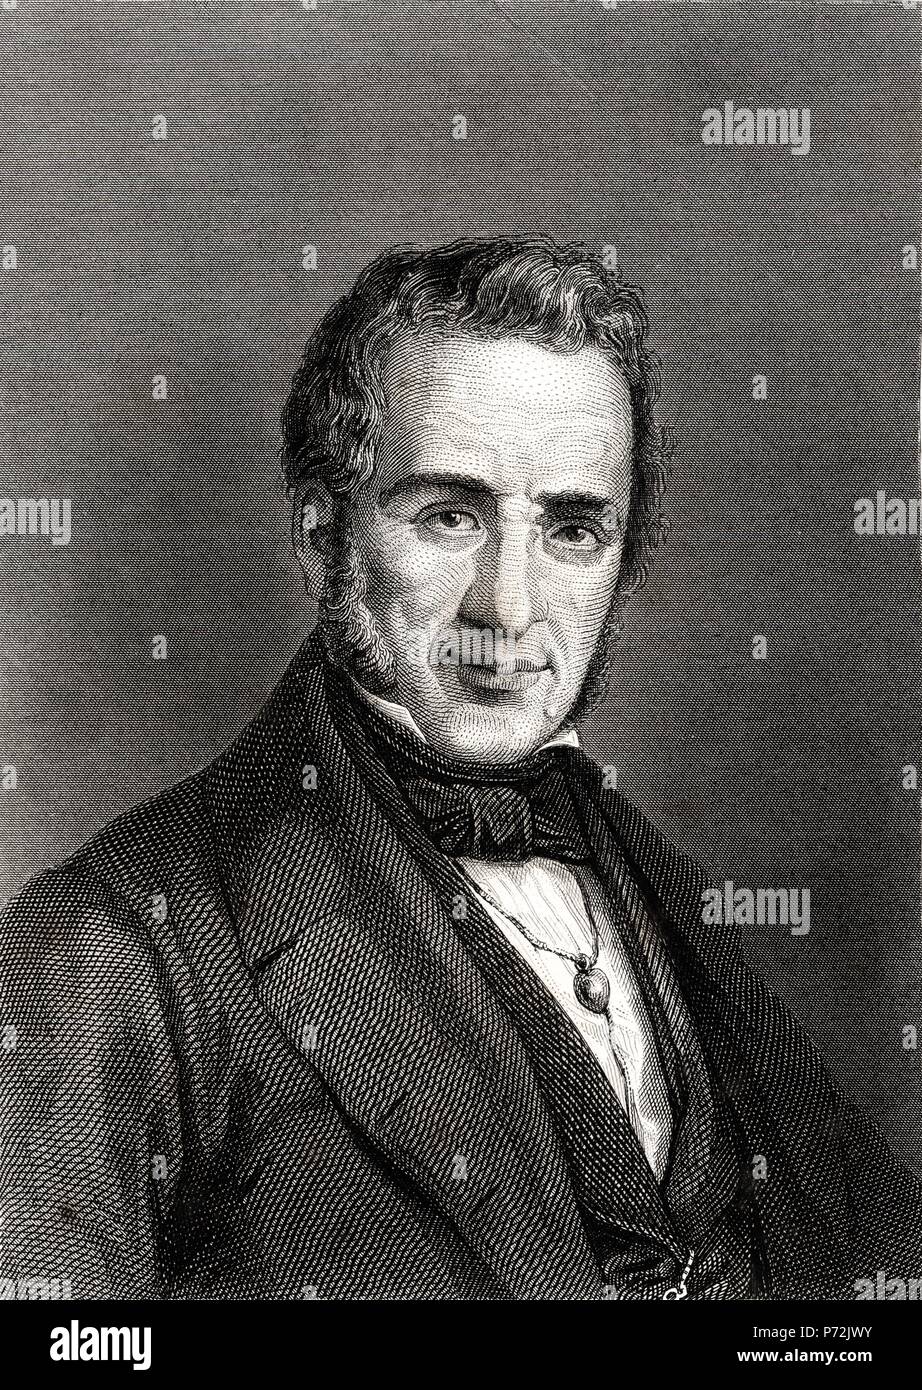 Agustín de Argüelles Alvarez (1766-1844), abogado, político y diplomático español. Grabado de 1866. Stock Photo